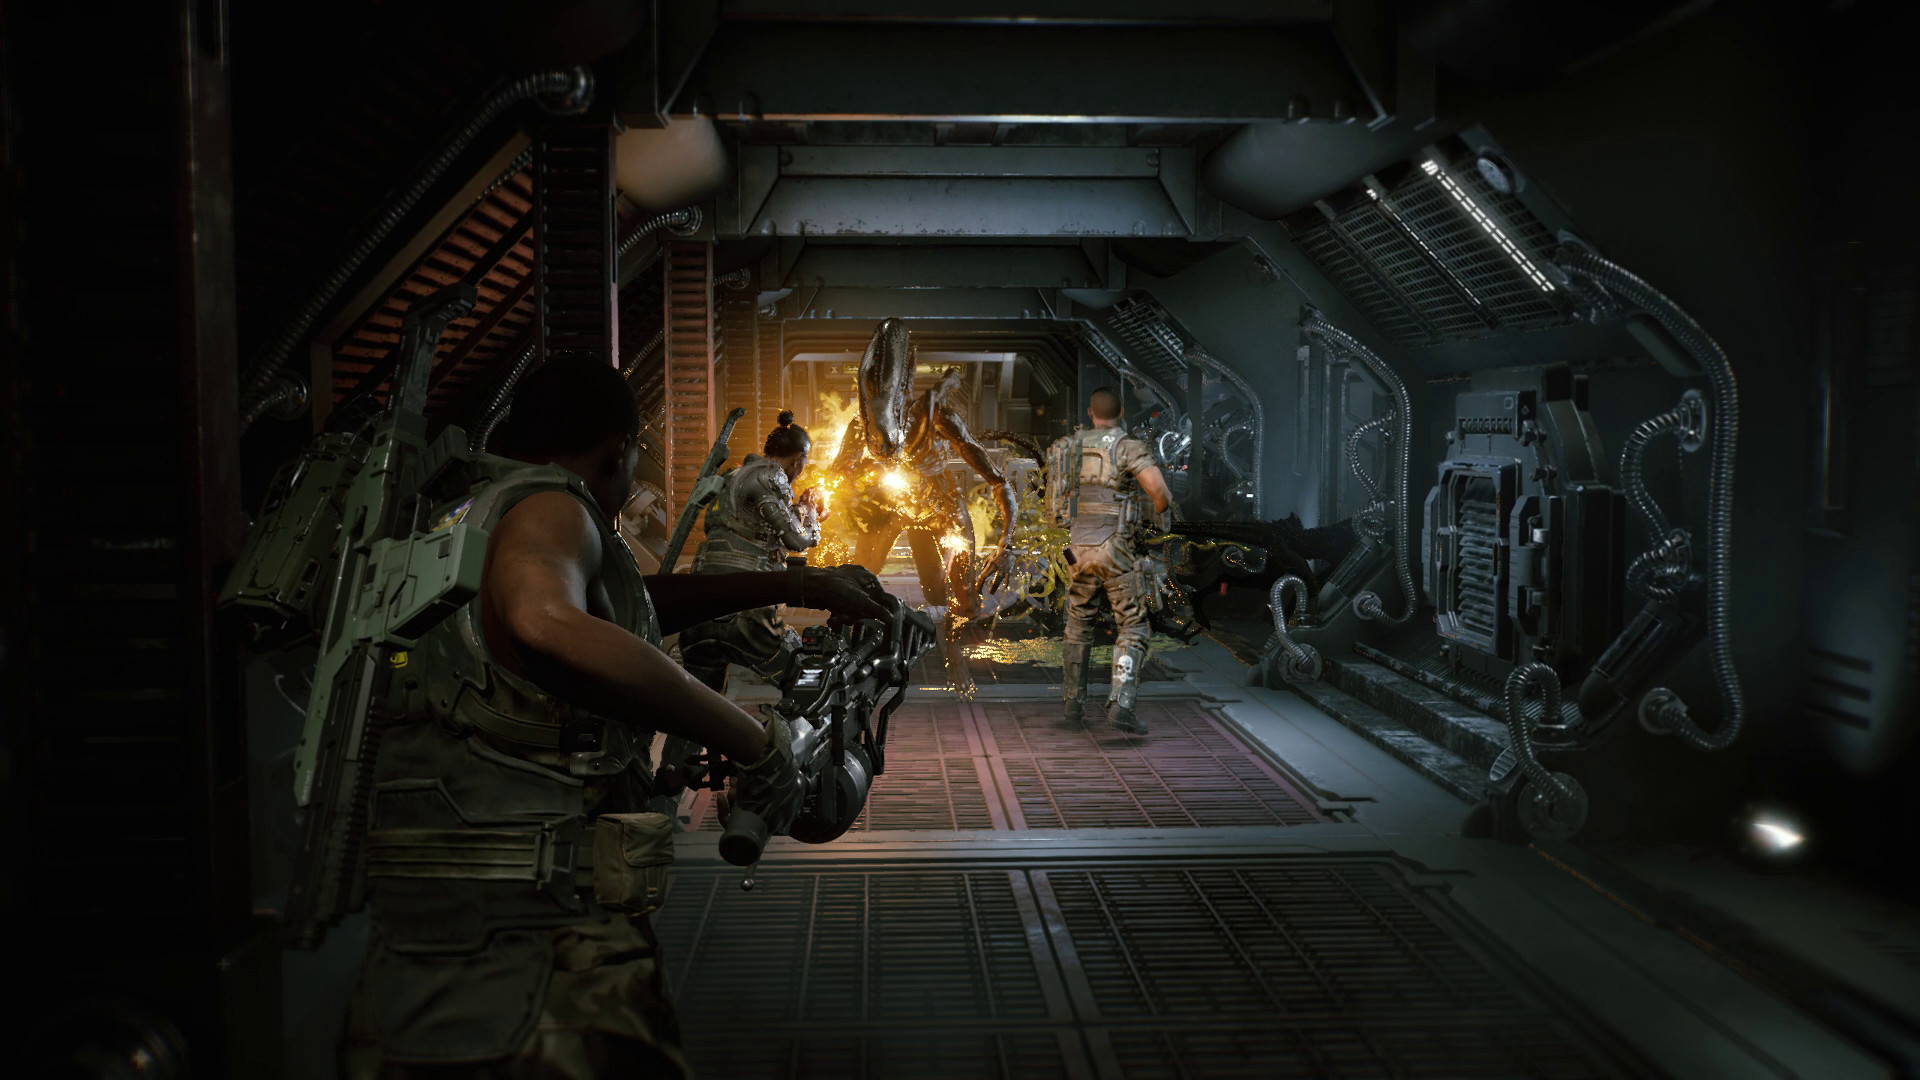 映画『エイリアン』を題材にした協力アクションゲーム『Aliens: Fireteam』が正式発表。3人で協力して20種類以上の無数の敵と戦え_004